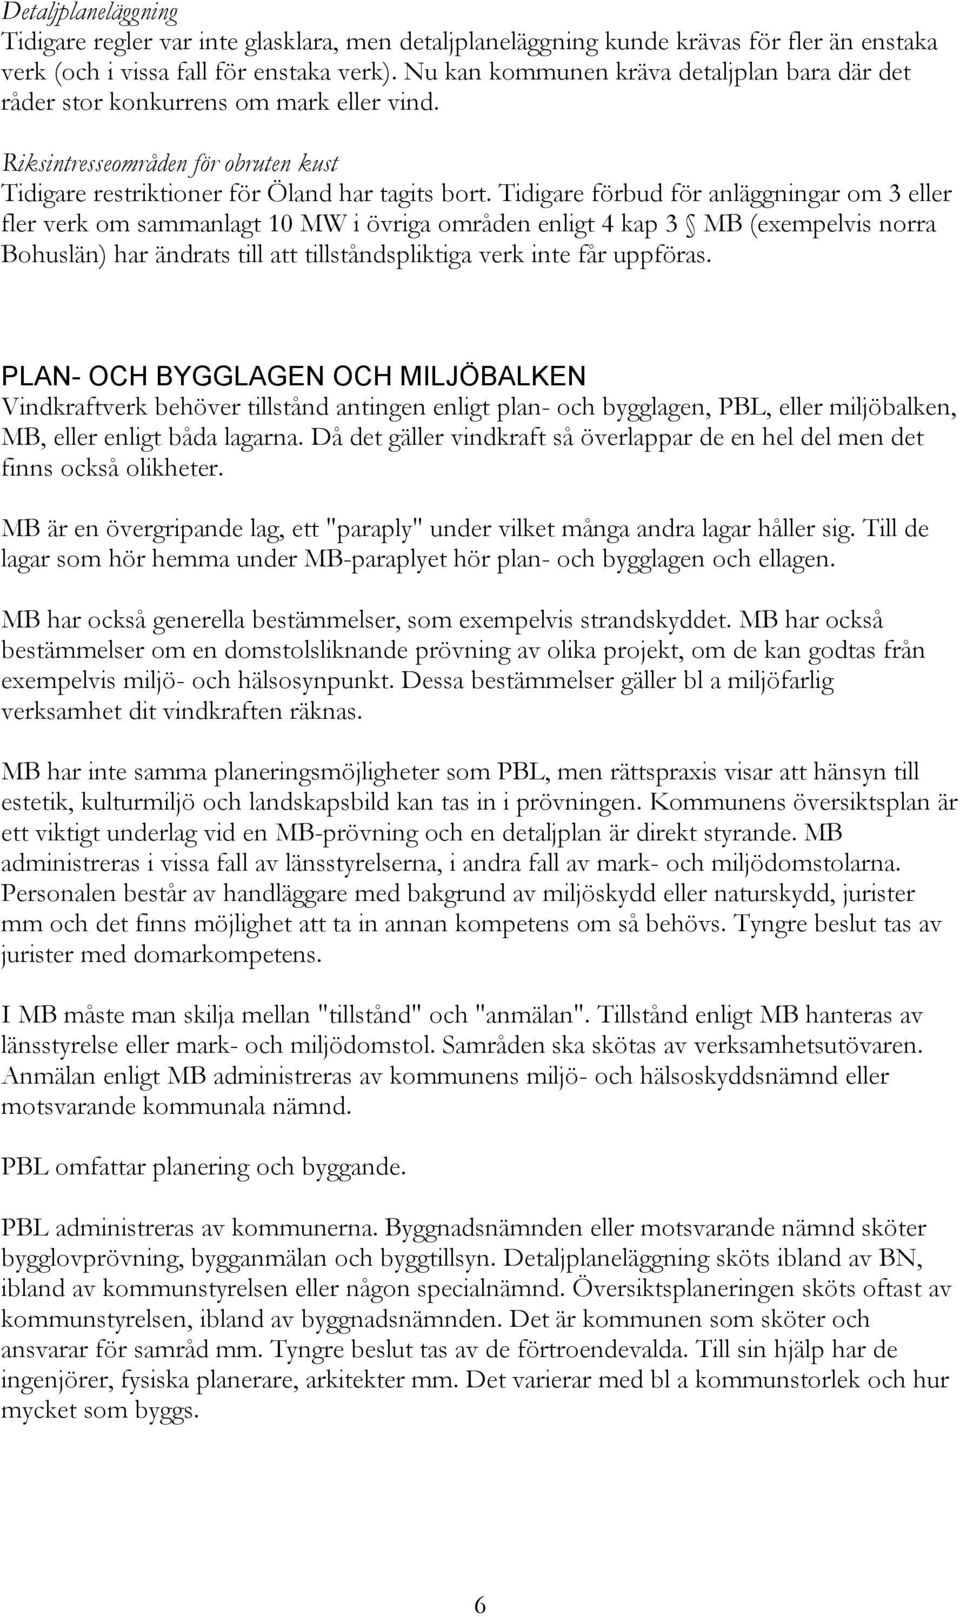 Tidigare förbud för anläggningar om 3 eller fler verk om sammanlagt 10 MW i övriga områden enligt 4 kap 3 MB (exempelvis norra Bohuslän) har ändrats till att tillståndspliktiga verk inte får uppföras.